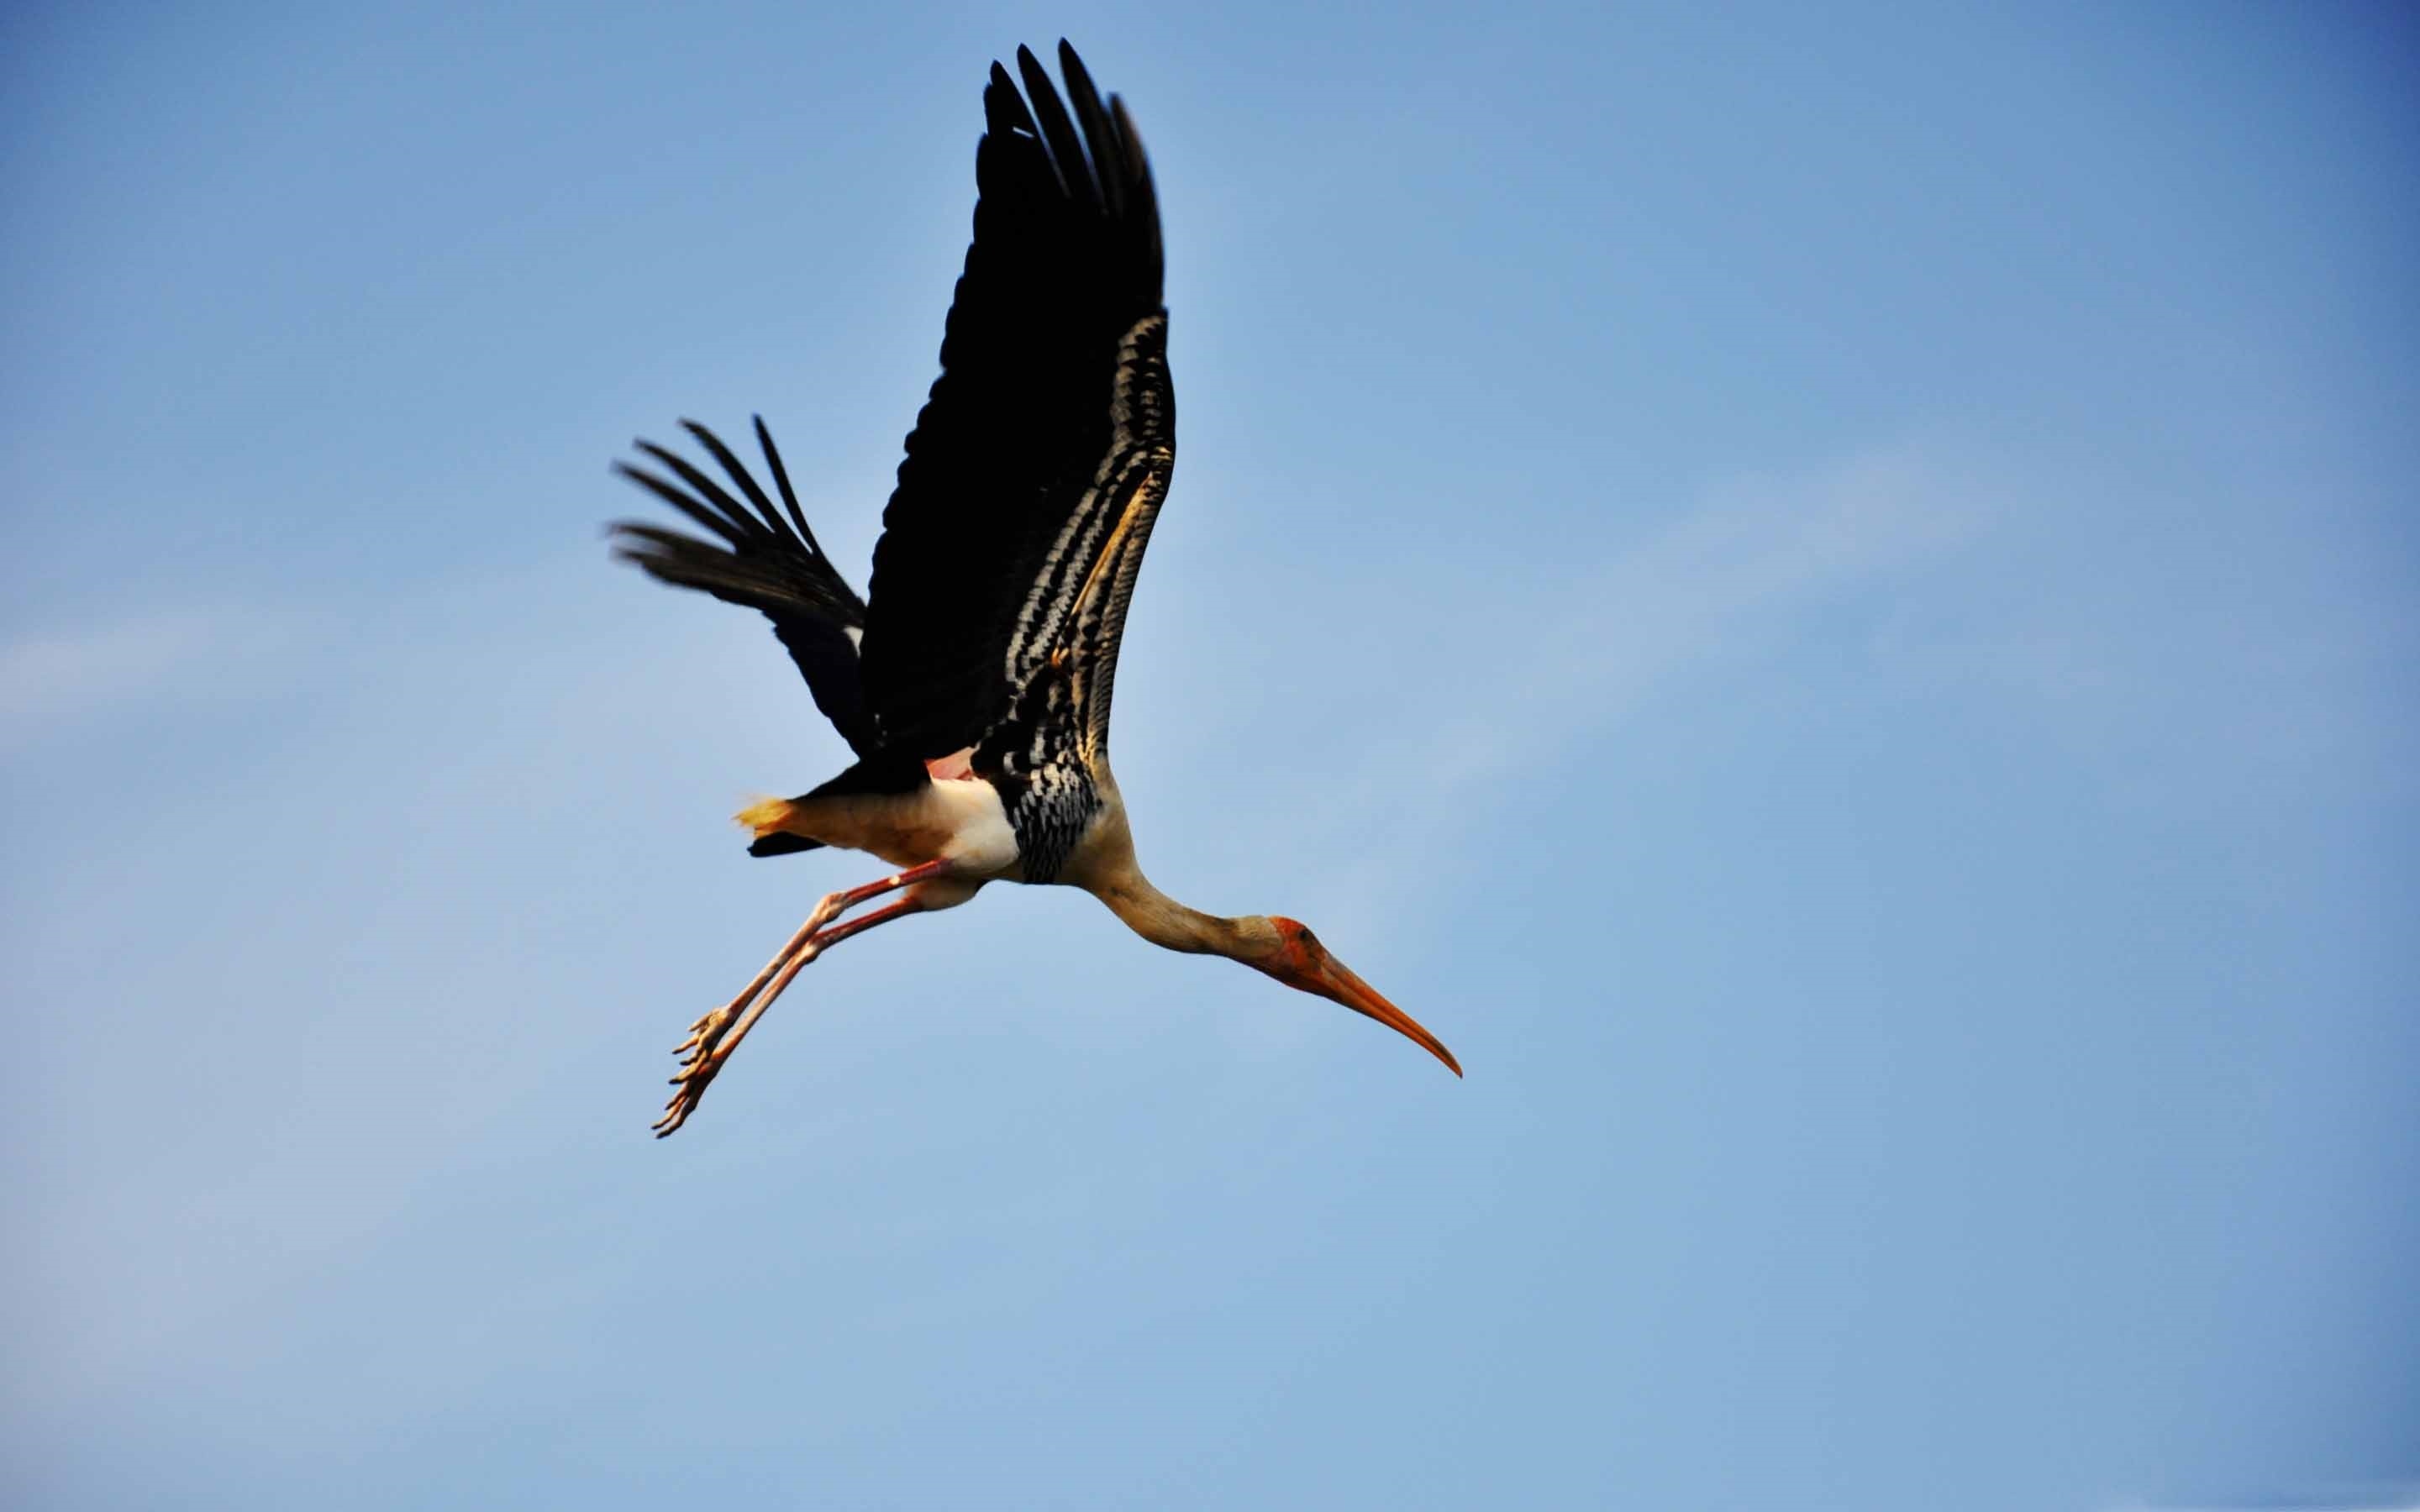 Painted stork, Majestic bird, MacBook Air wallpaper, Exquisite plumage, 2880x1800 HD Desktop